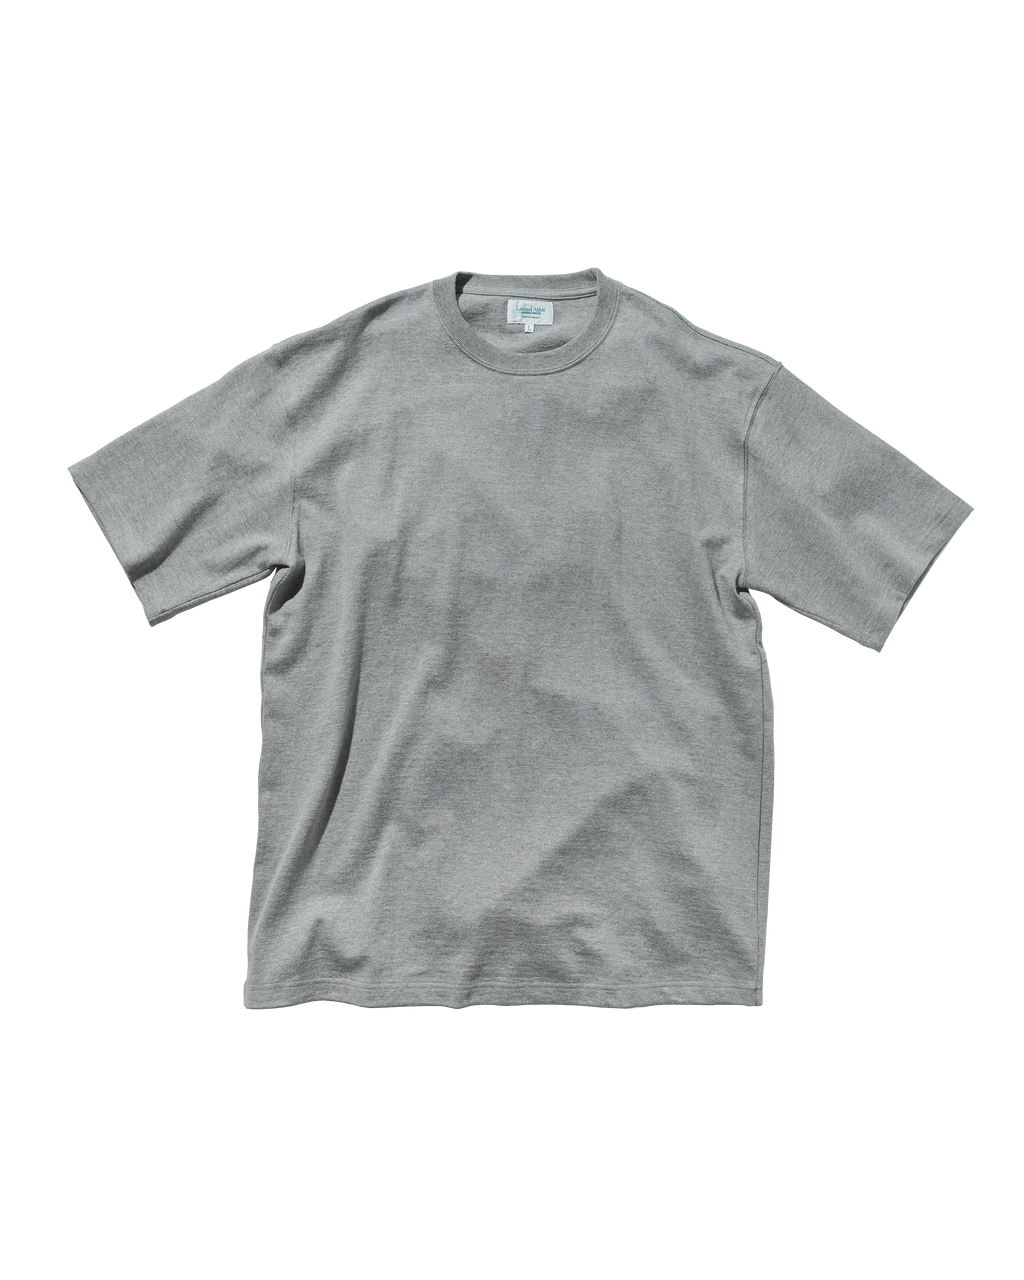 80001 - Japan Made - Standard Fit Short Sleeve T-shirt  - Grey x 1